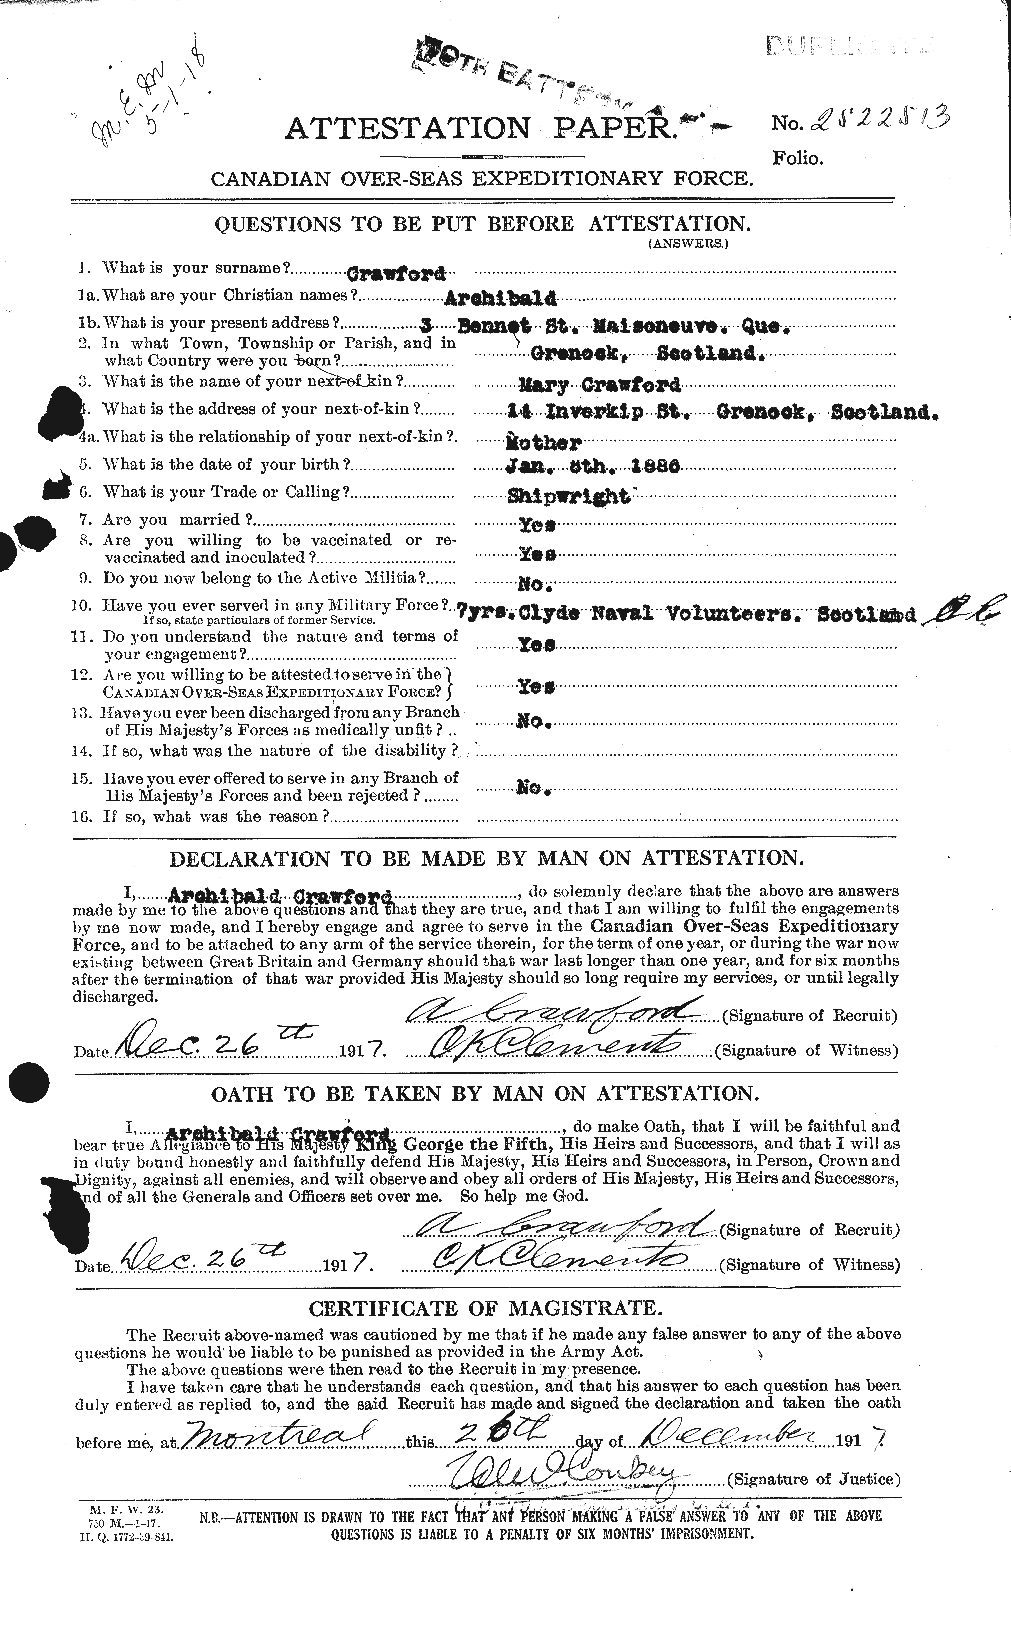 Dossiers du Personnel de la Première Guerre mondiale - CEC 060935a